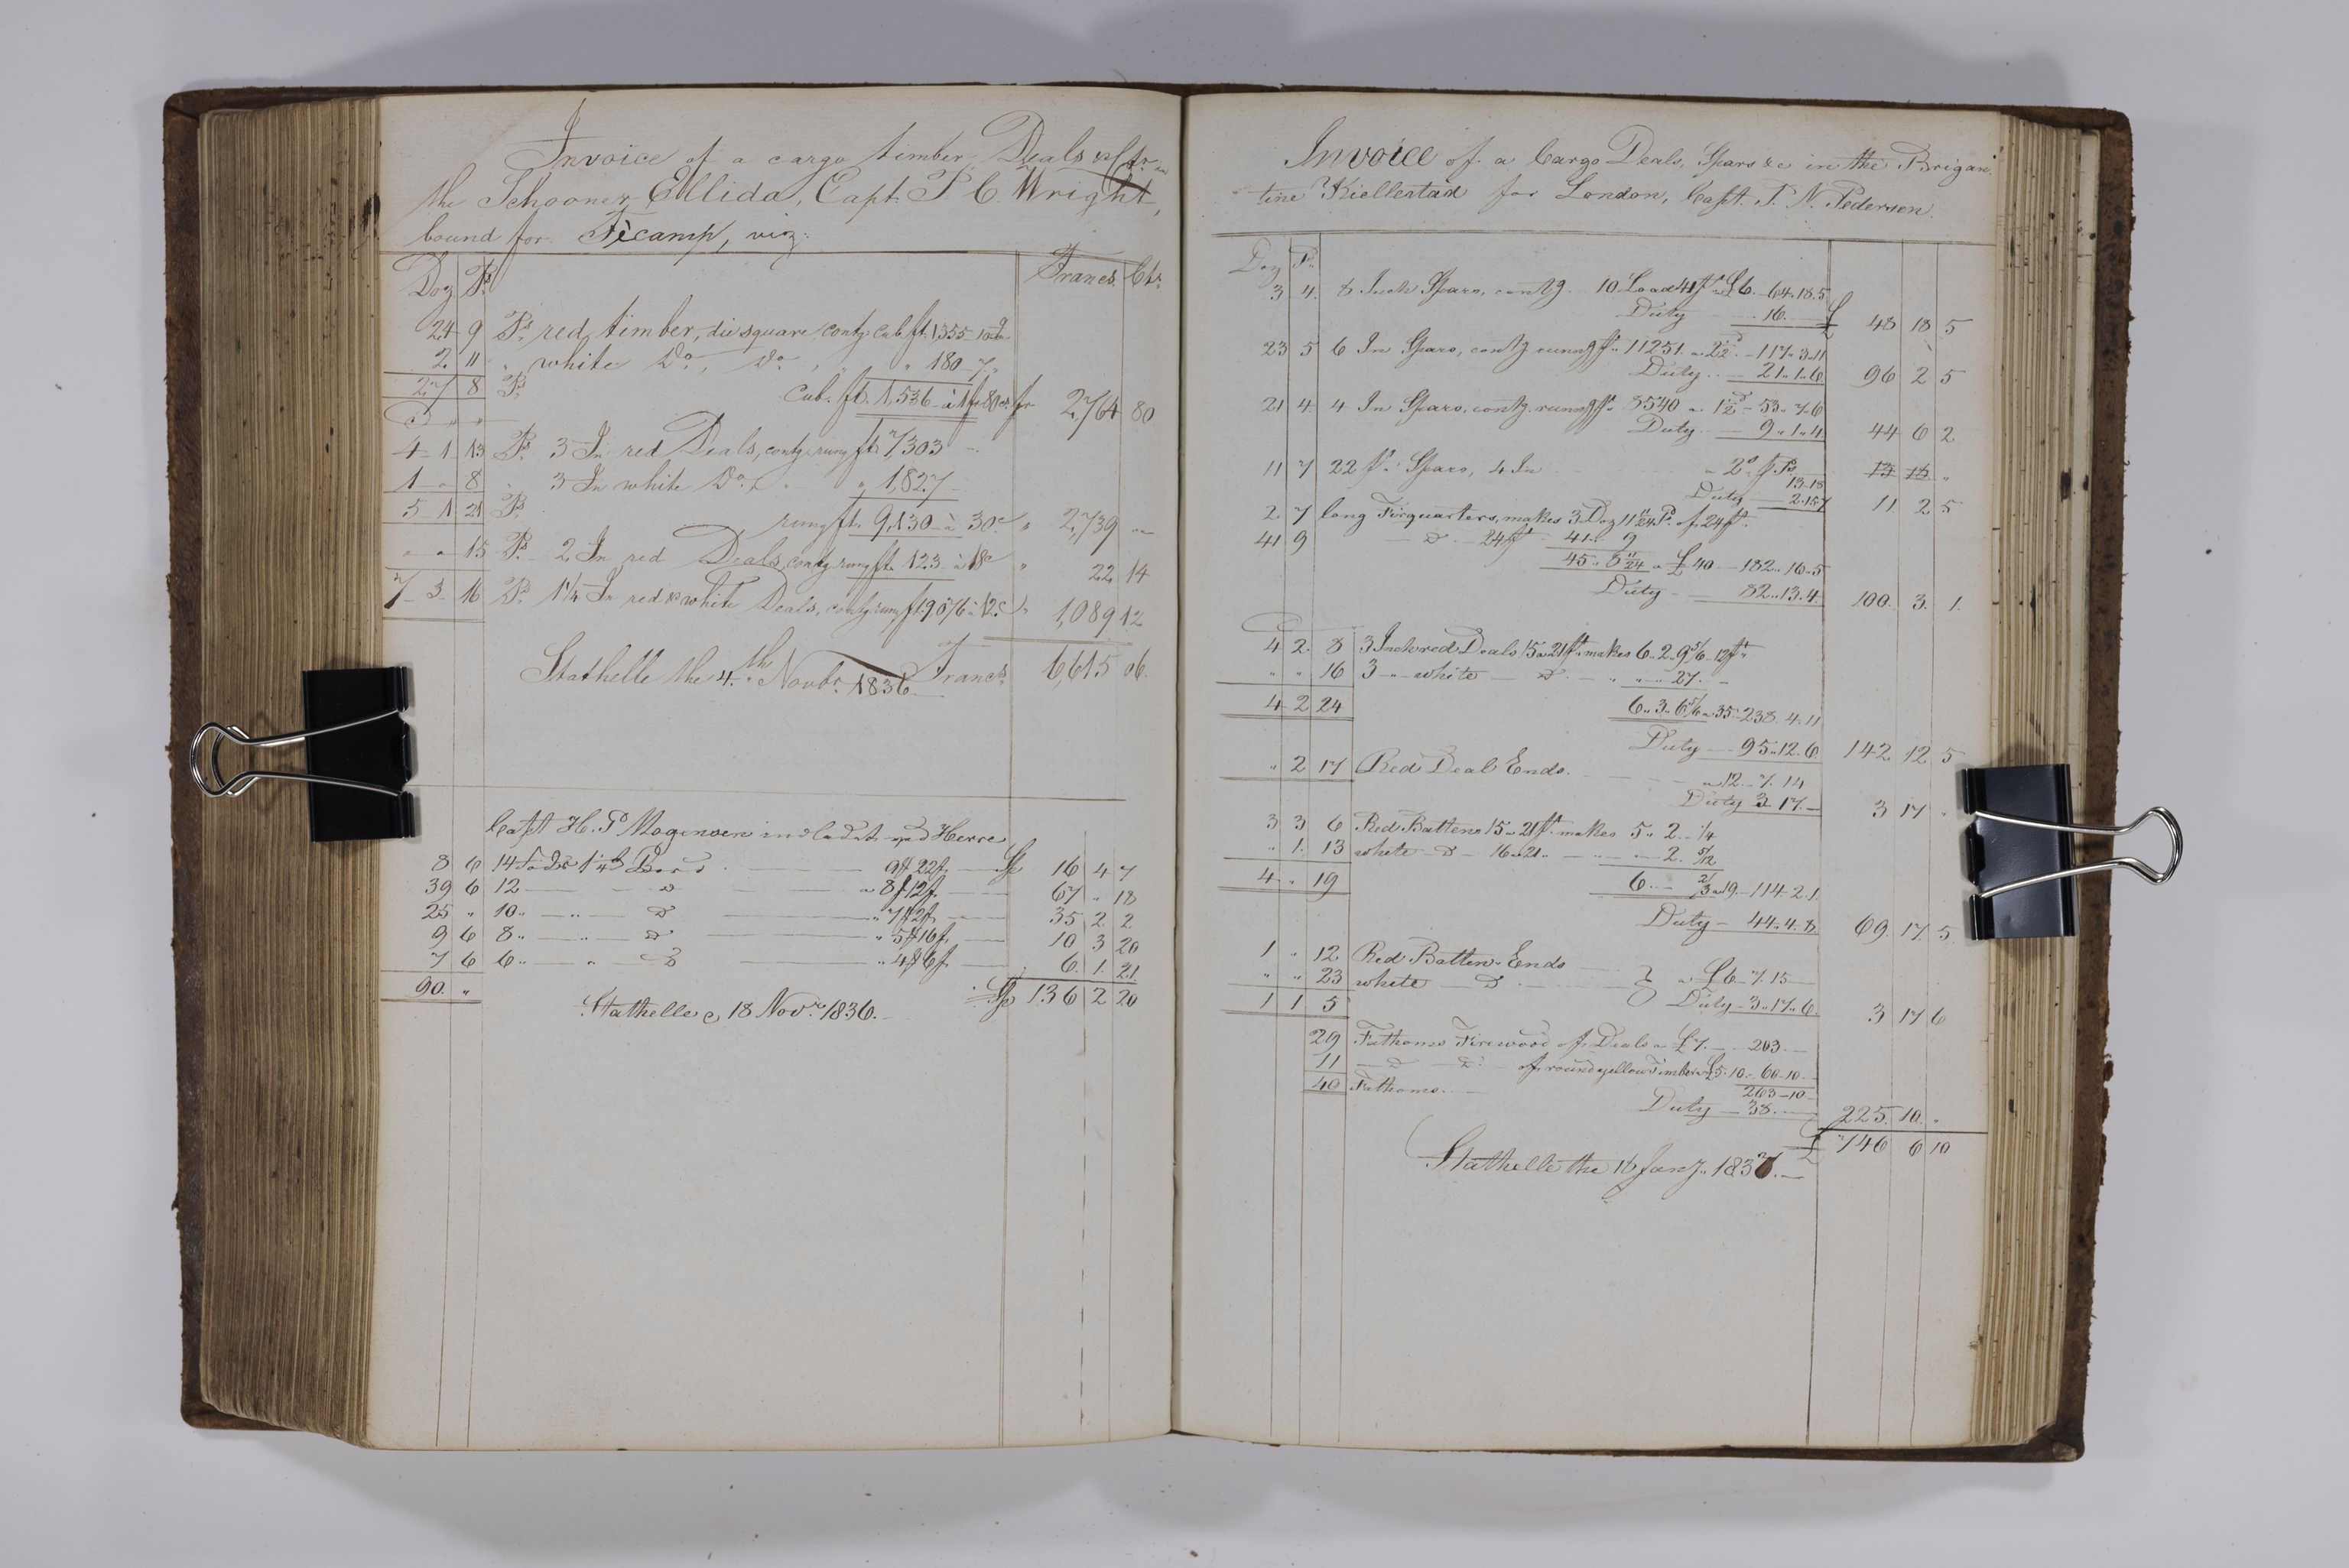 , Priscourant-tømmerpriser, 1834-38, 1834-1838, s. 263